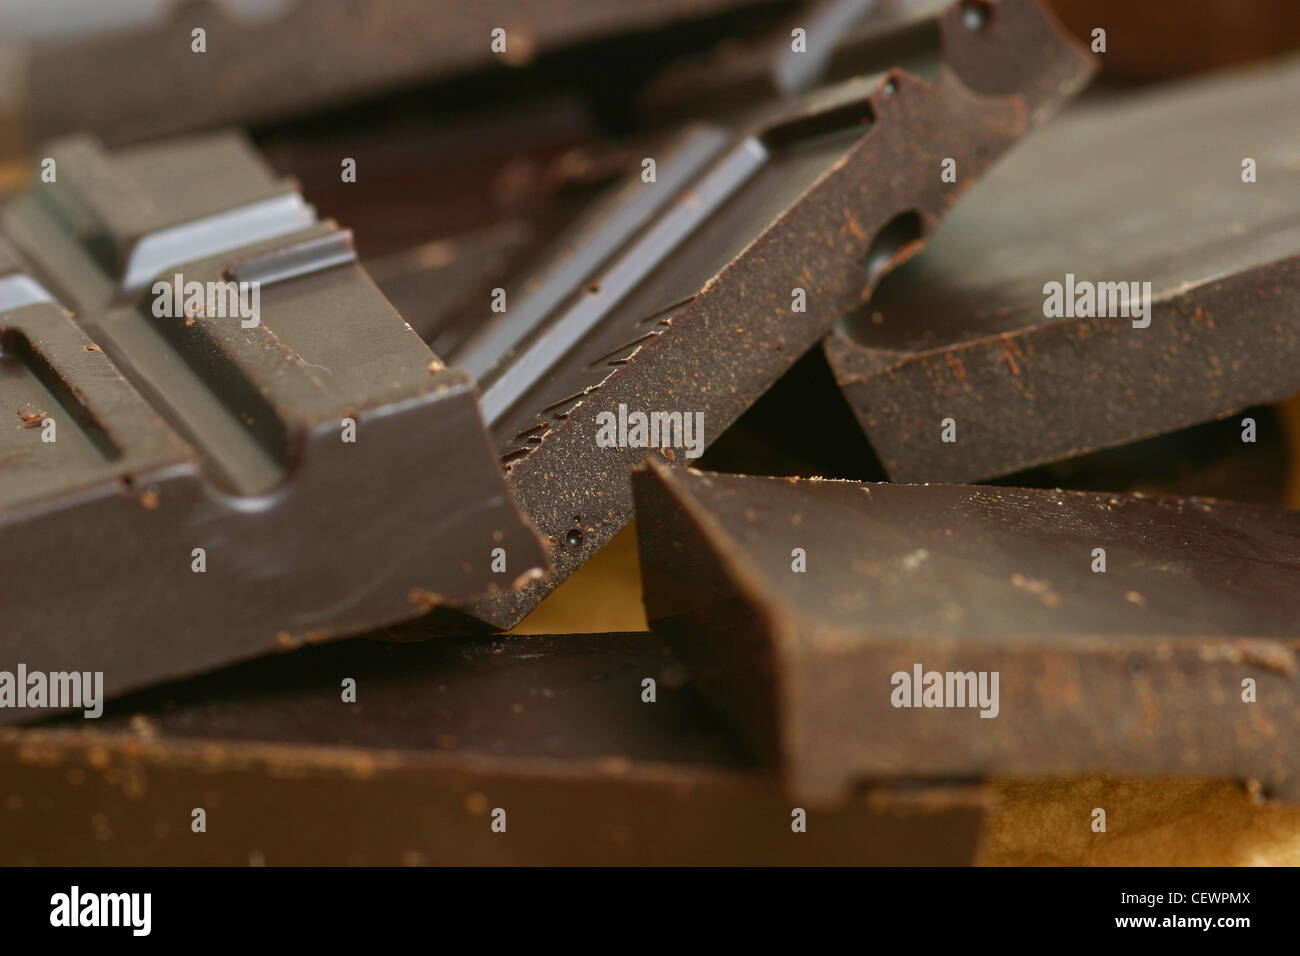 Un gros plan de carrés de chocolat noir Banque D'Images